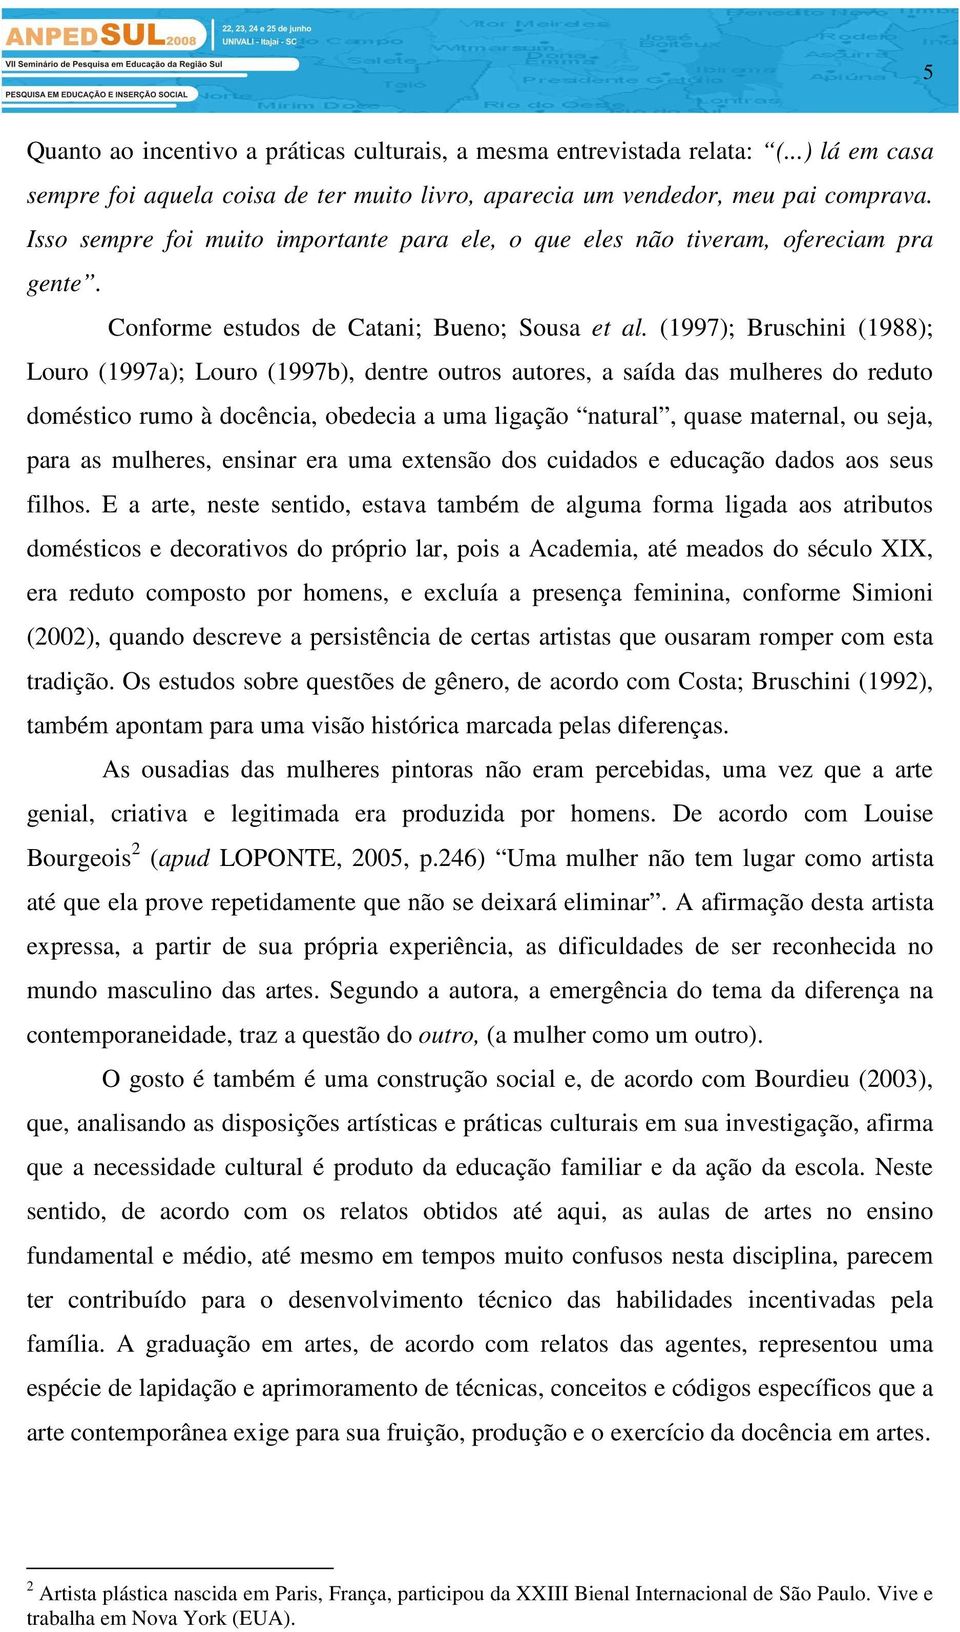 (1997); Bruschini (1988); Louro (1997a); Louro (1997b), dentre outros autores, a saída das mulheres do reduto doméstico rumo à docência, obedecia a uma ligação natural, quase maternal, ou seja, para